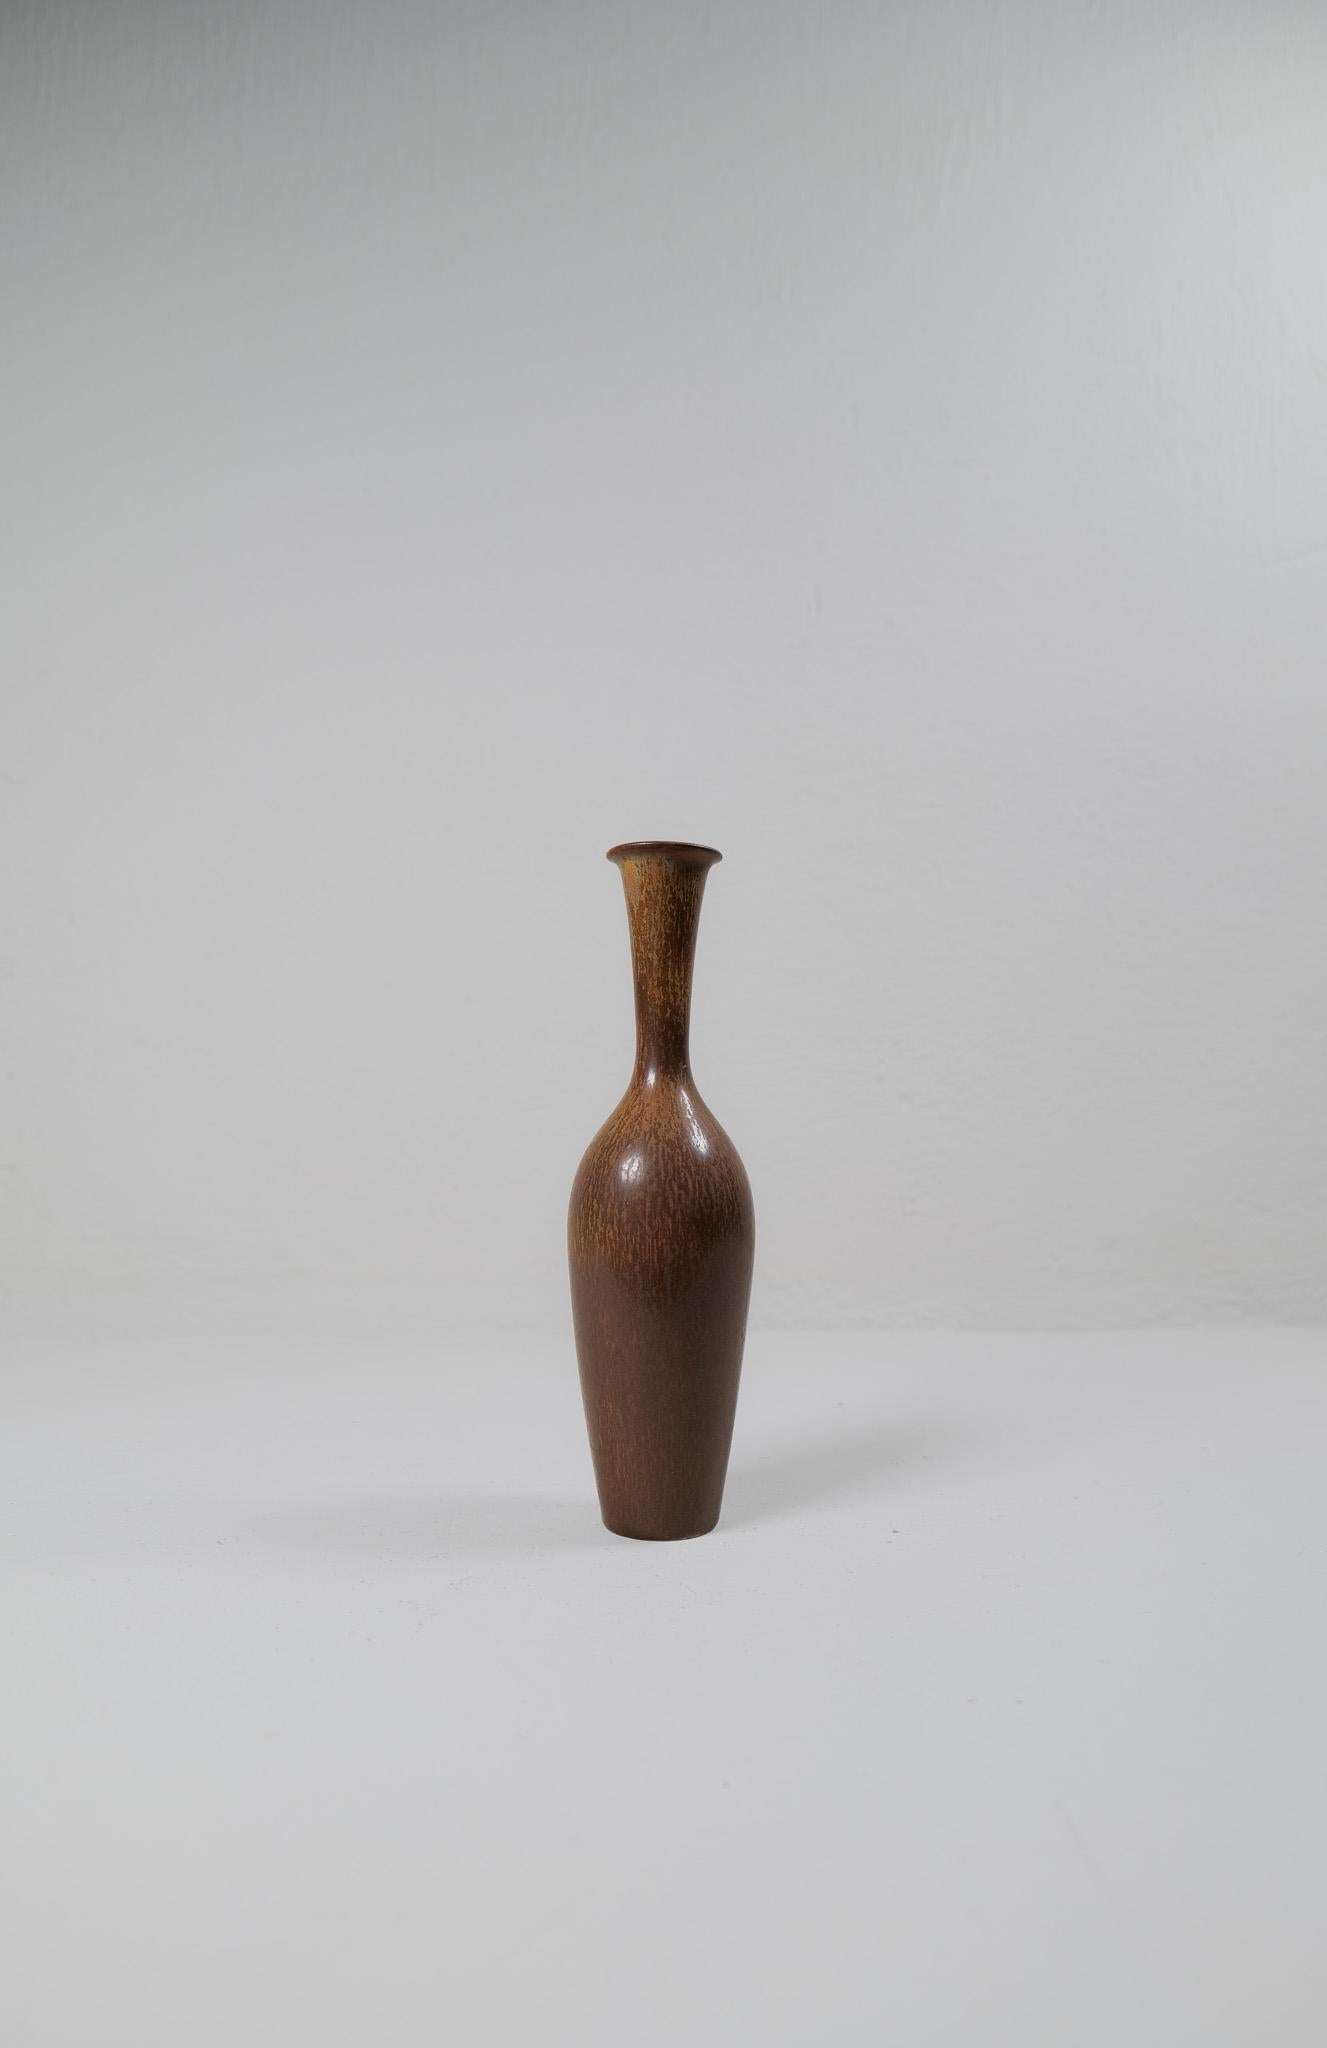 Ce magnifique grand vase a été créé et dessiné par Gunnar Nylund à l'usine de Rörstrand dans les années 1950 en Suède. 

La glaçure est étonnante et s'harmonise parfaitement avec la forme du vase en goulot d'étranglement. 

Très bon état. 

Mesures